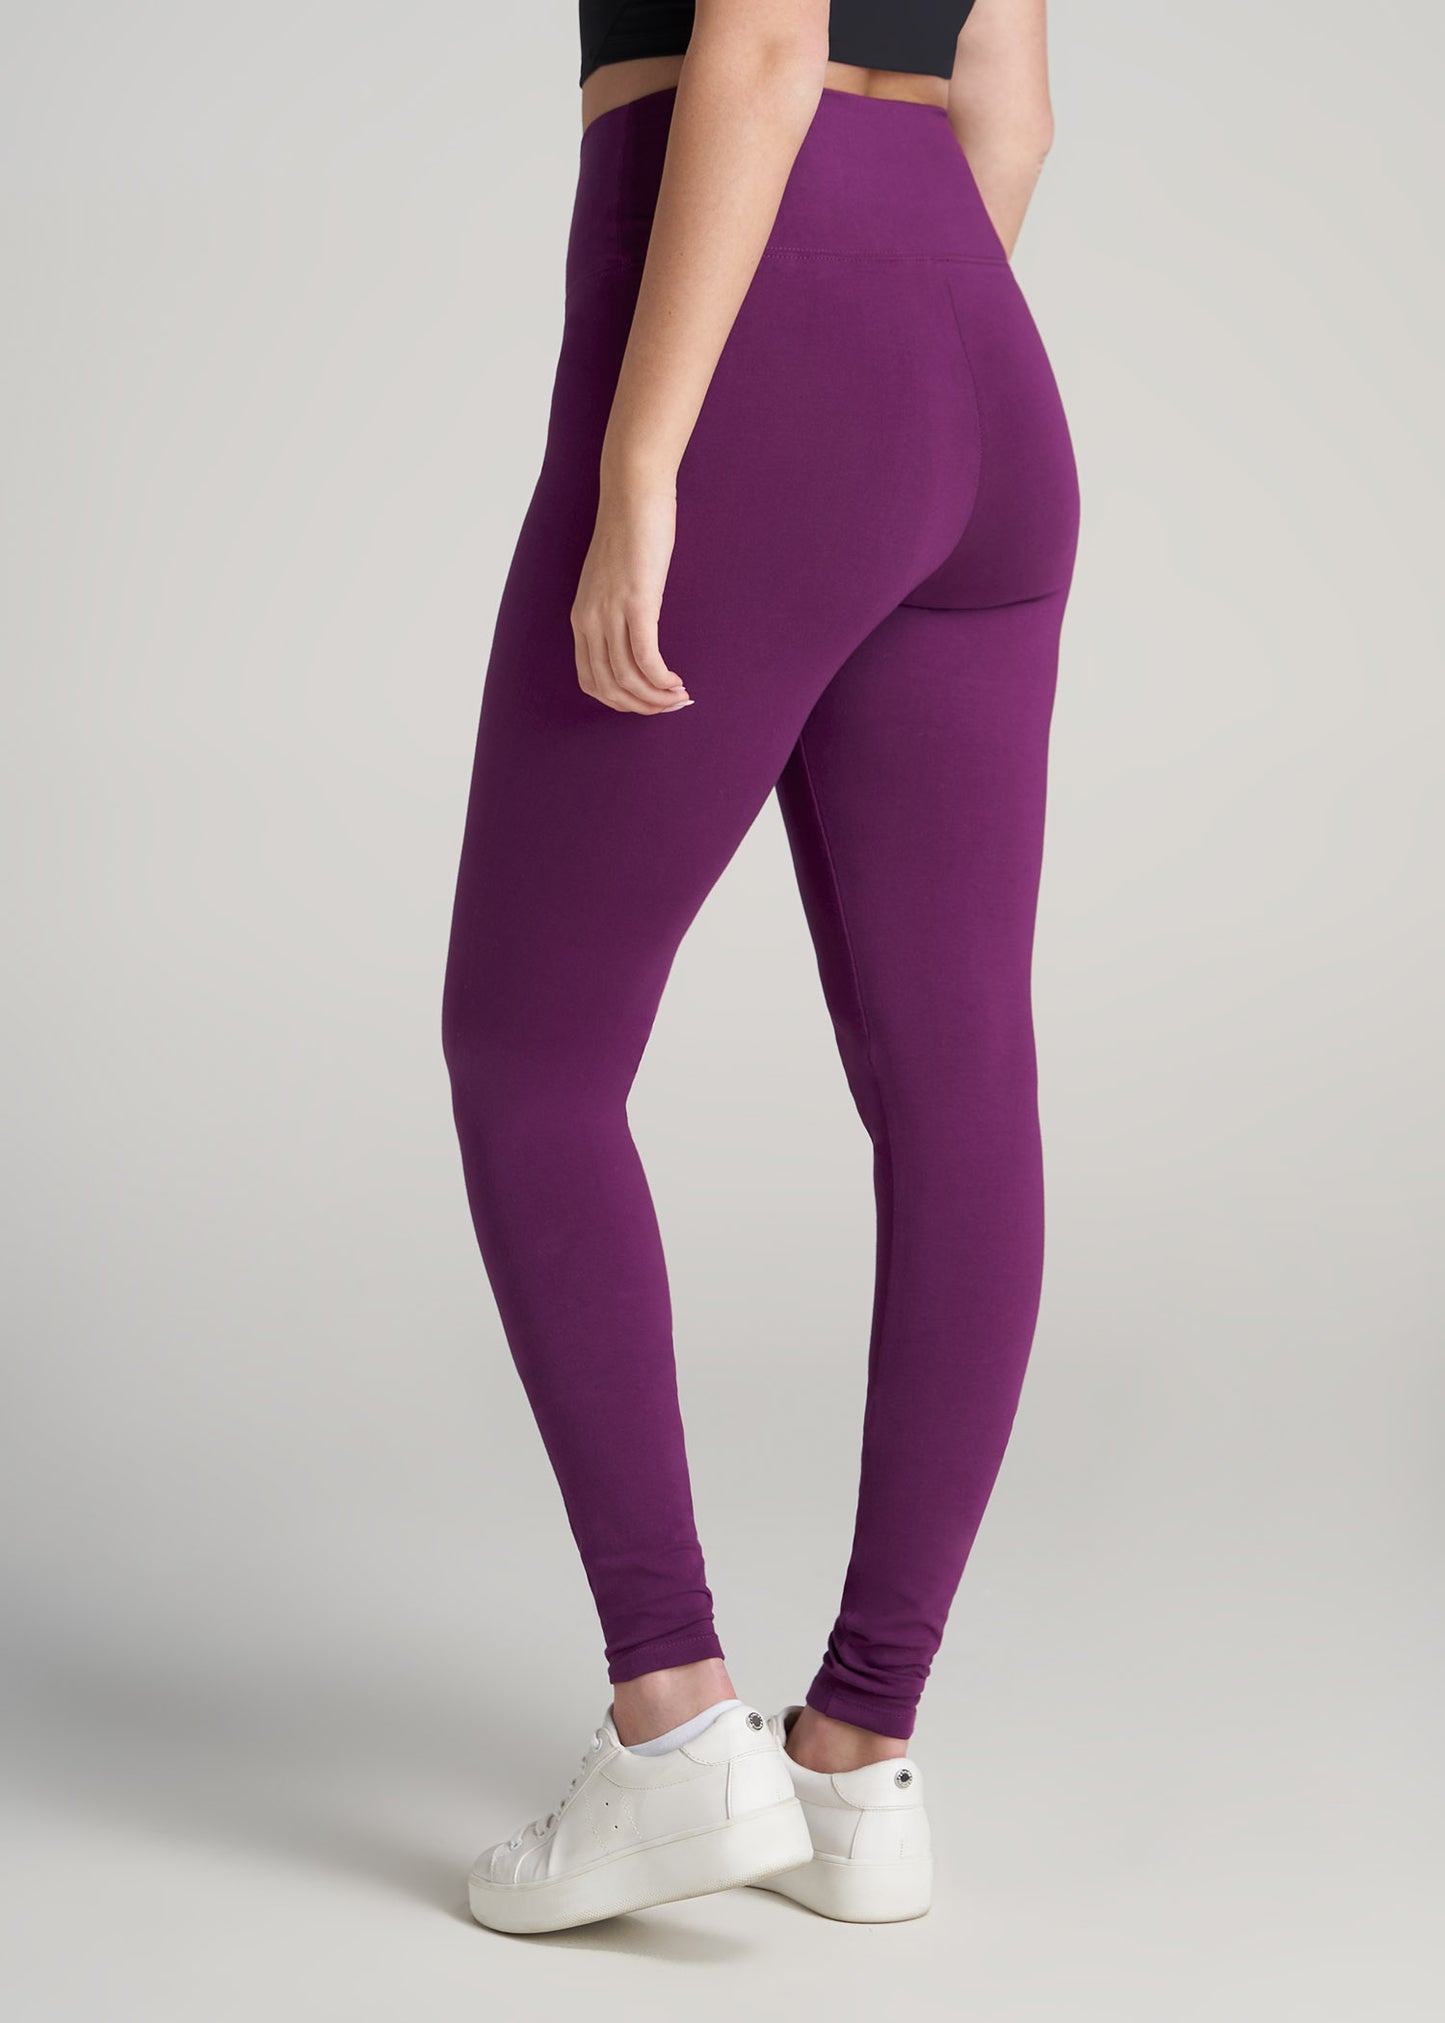 lululemon athletica, Pants & Jumpsuits, Lululemon Size 6 Purple Leggings